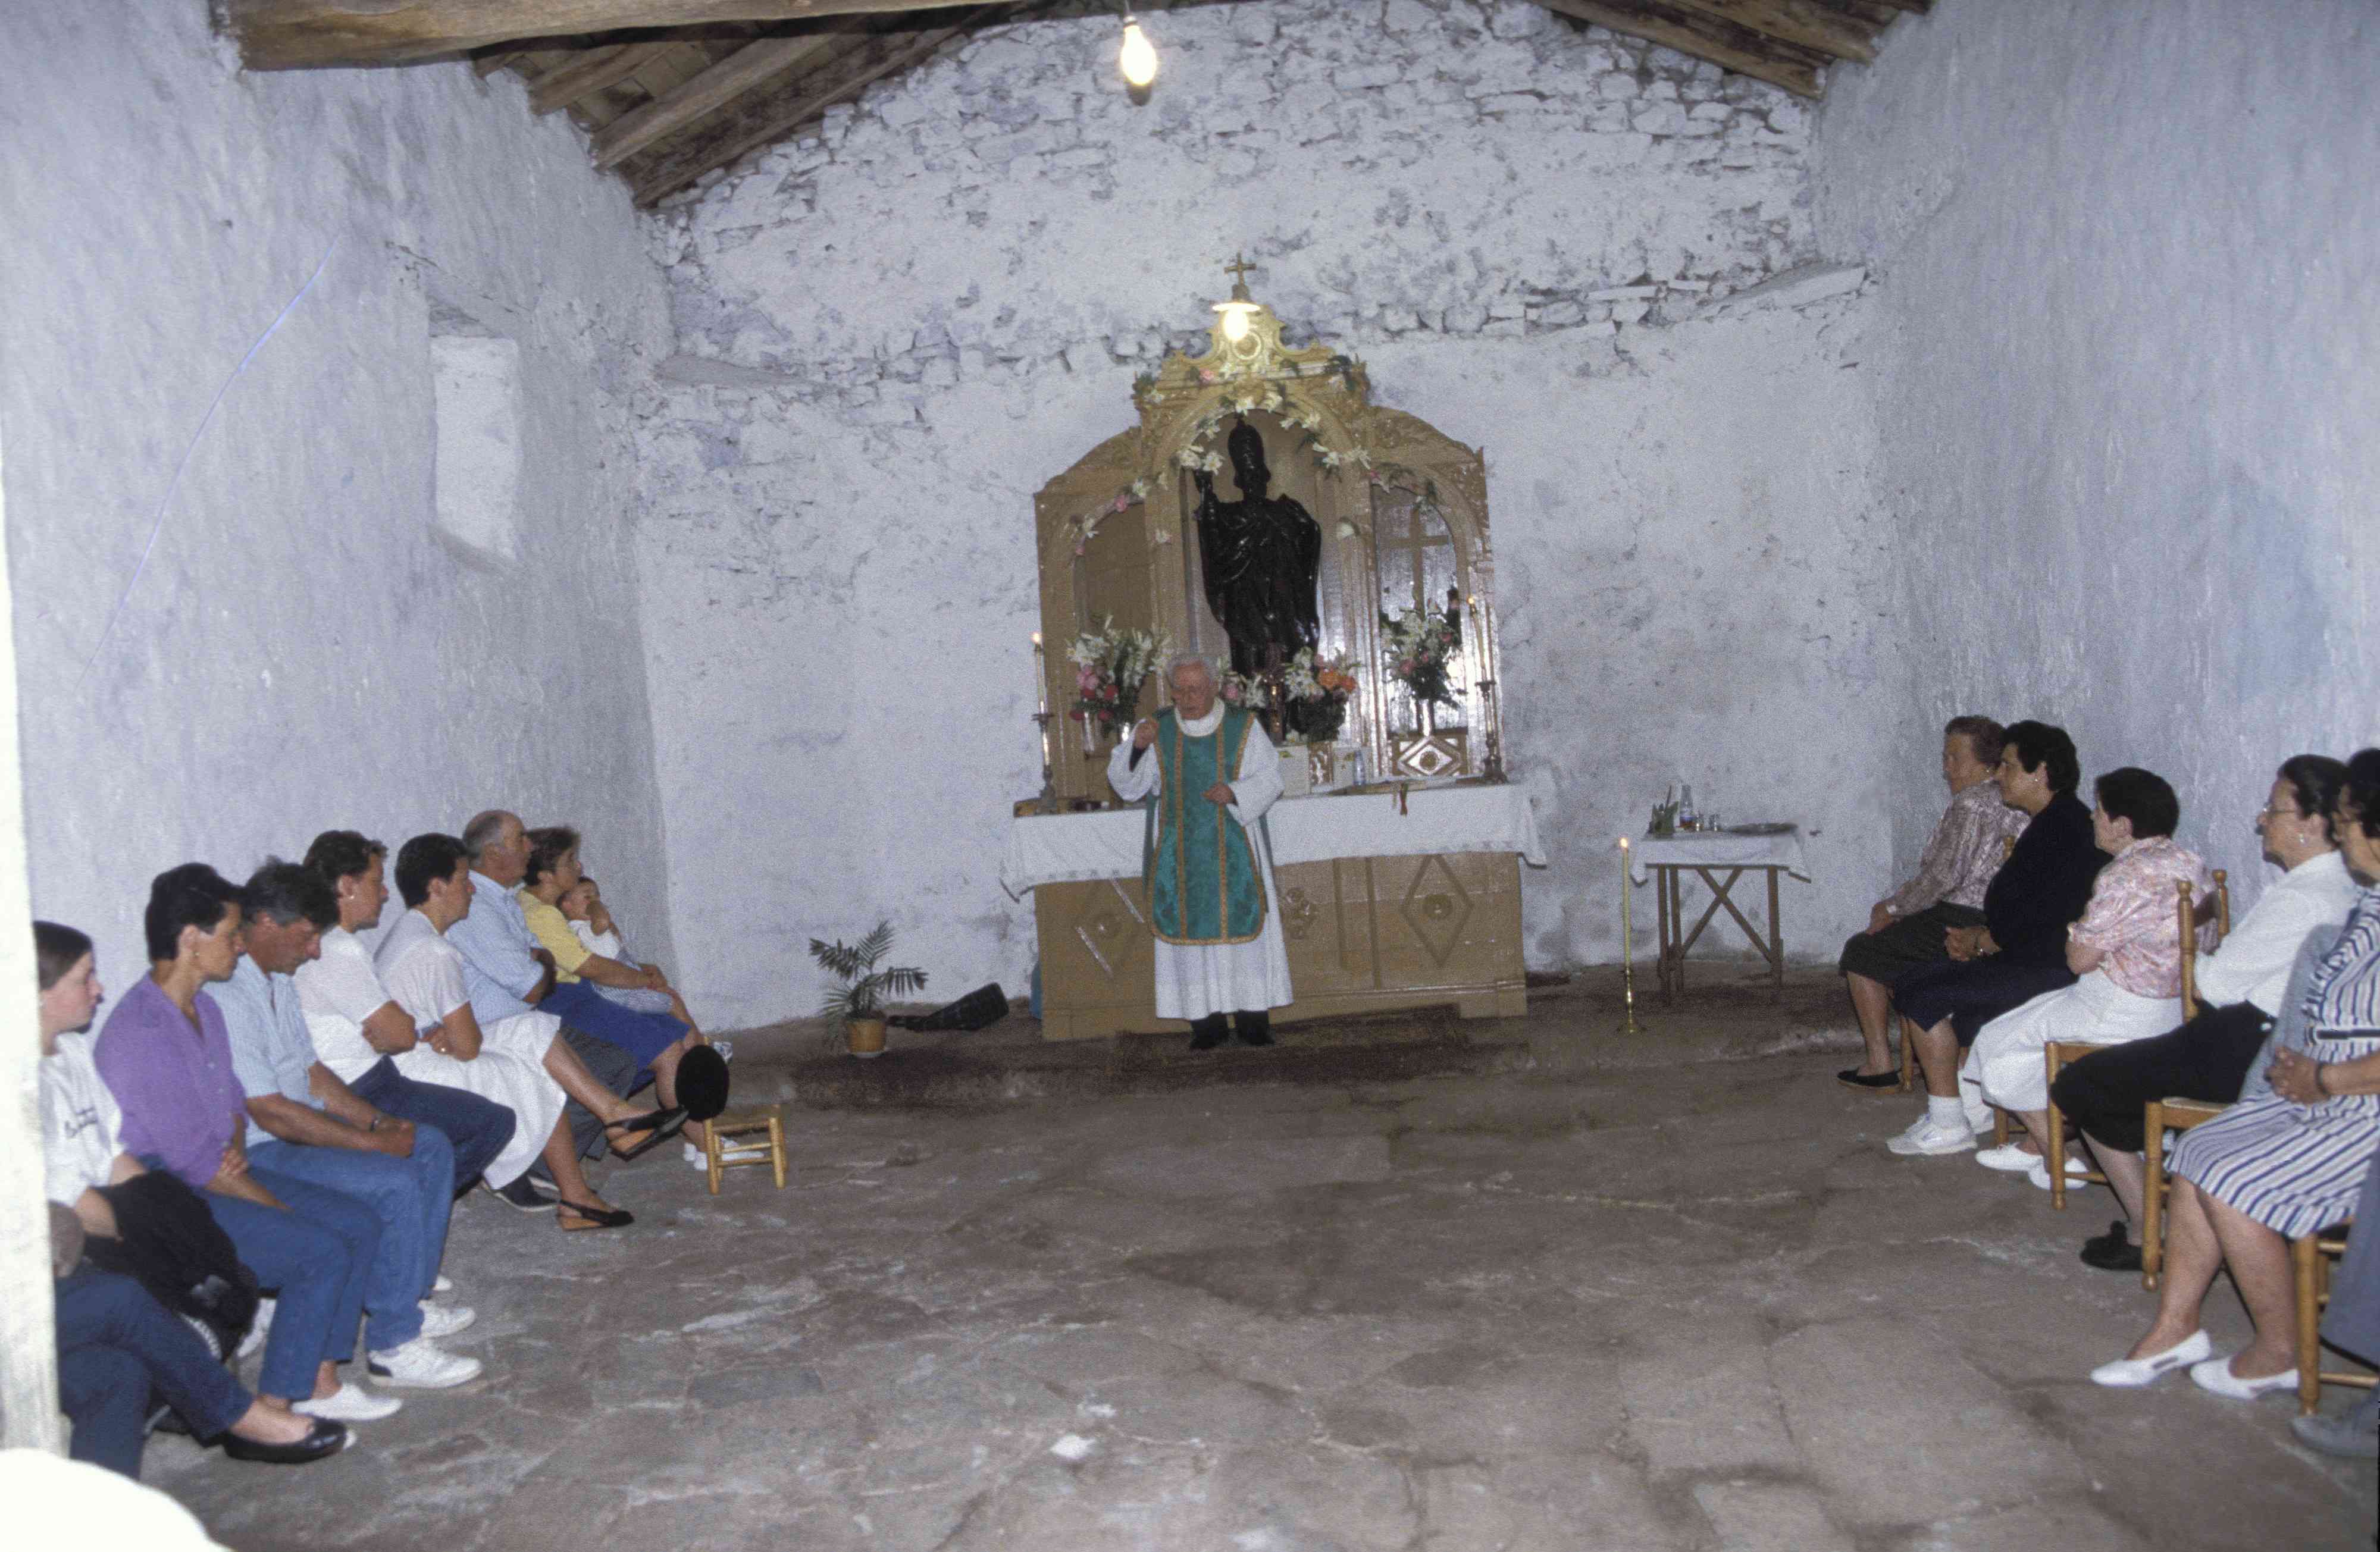 El conjuro de Akondia, una de los ritos más antiguos de Eibar,  se celebrará el día 3 de julio en la ermita de San Pedro de Akondia.